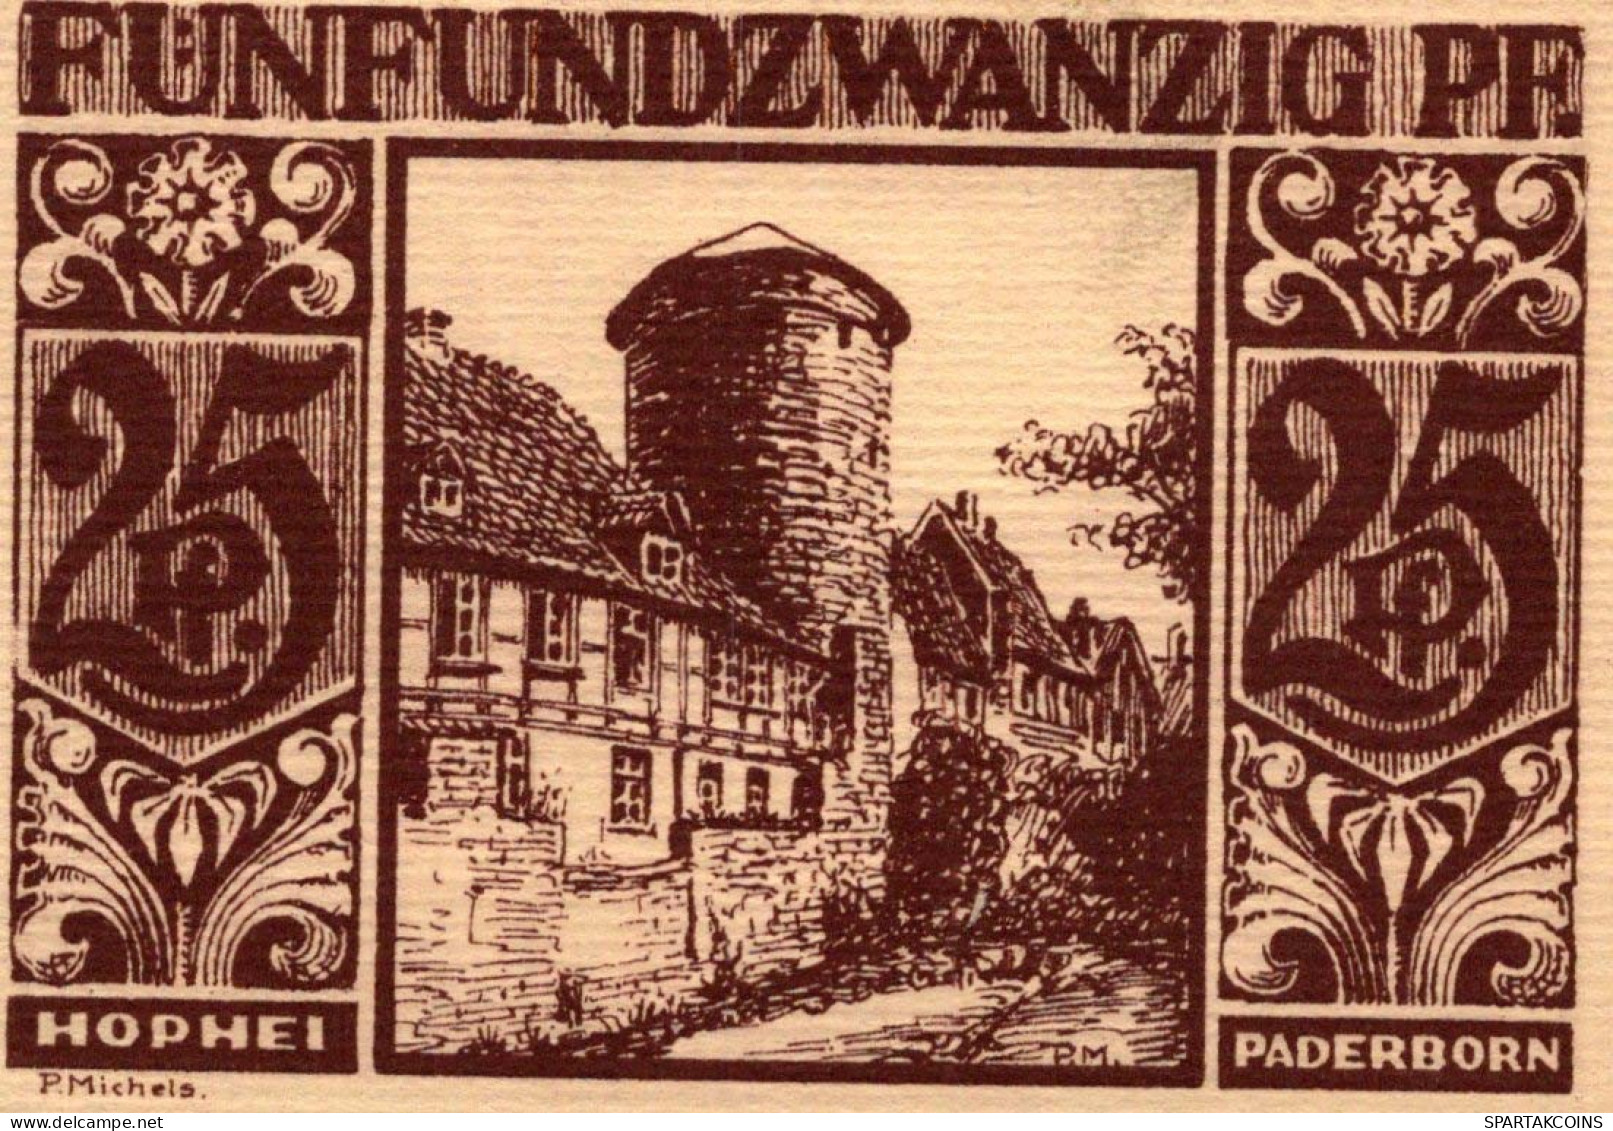 25 PFENNIG 1921 Stadt PADERBORN Westphalia DEUTSCHLAND Notgeld Banknote #PG214 - [11] Emissions Locales